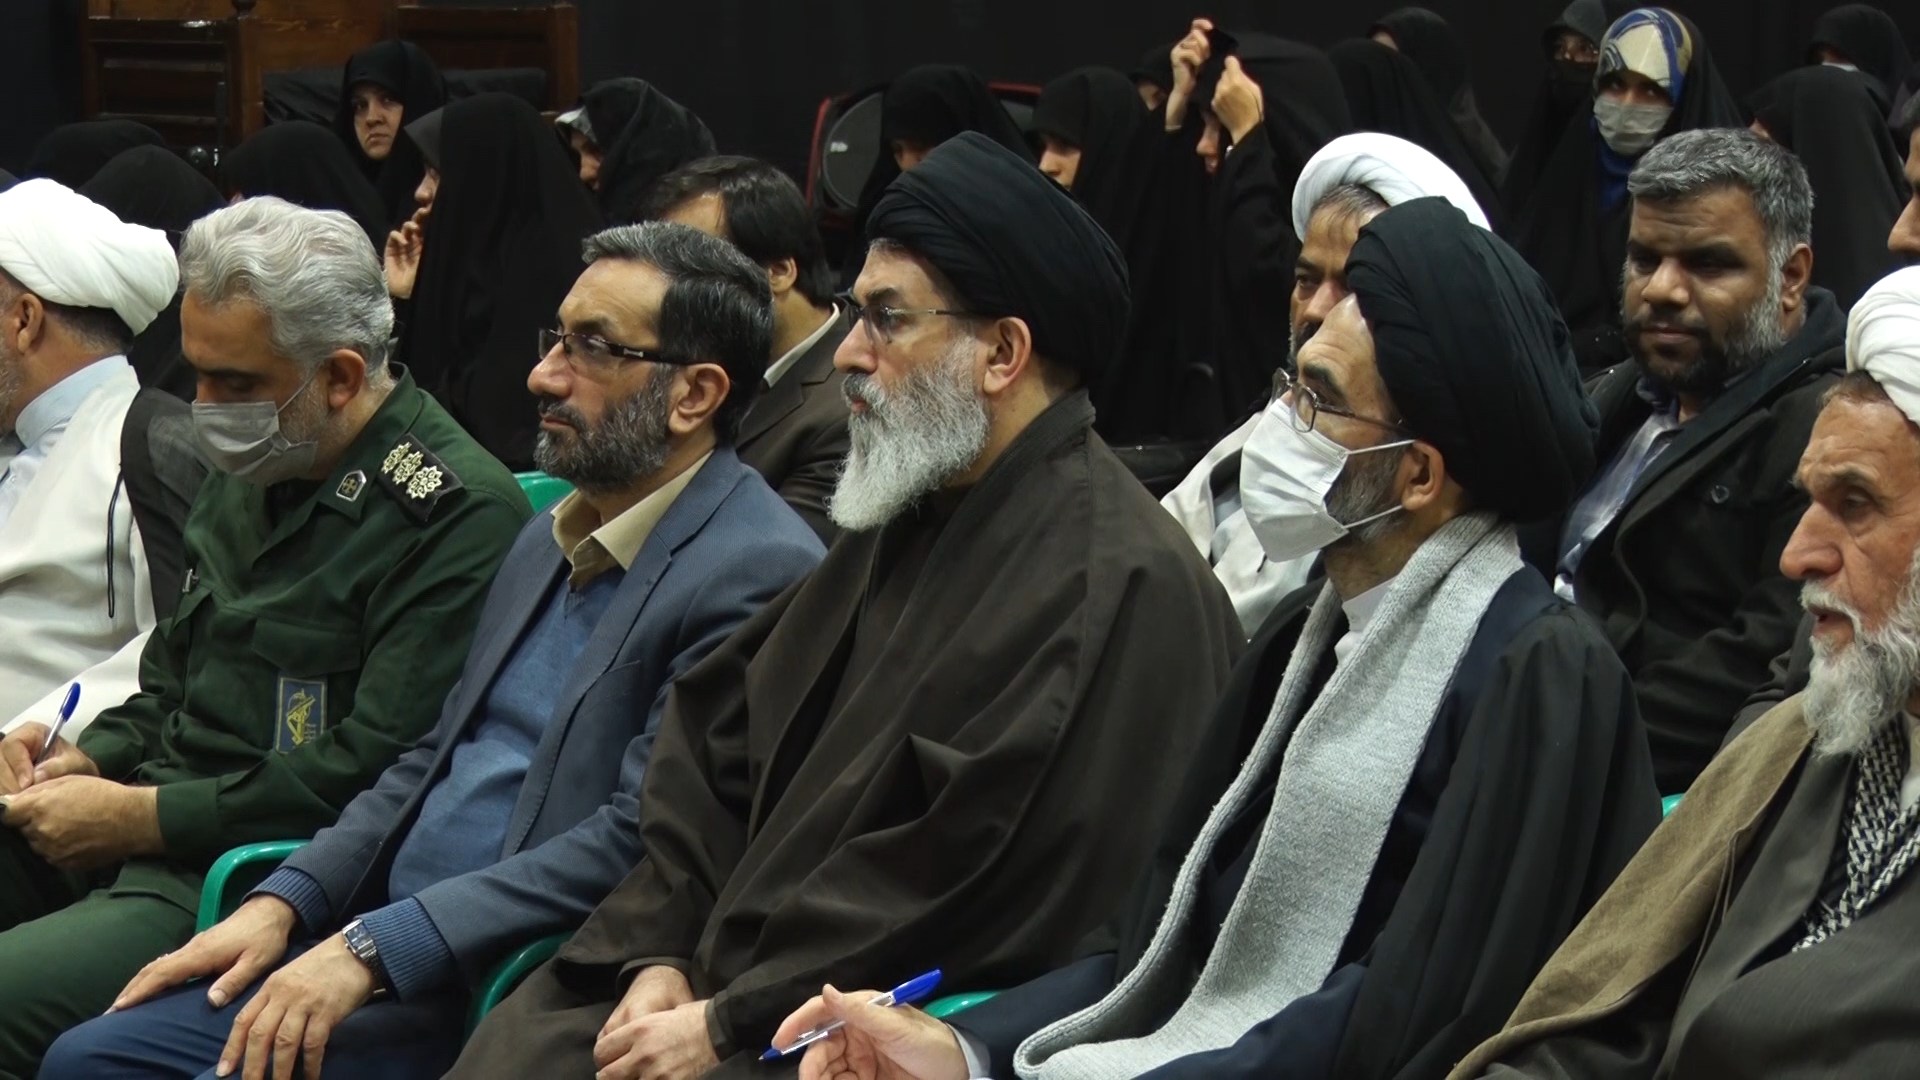 اقدامات دشمن برای ضربه زدن به نظام و انقلاب اسلامی